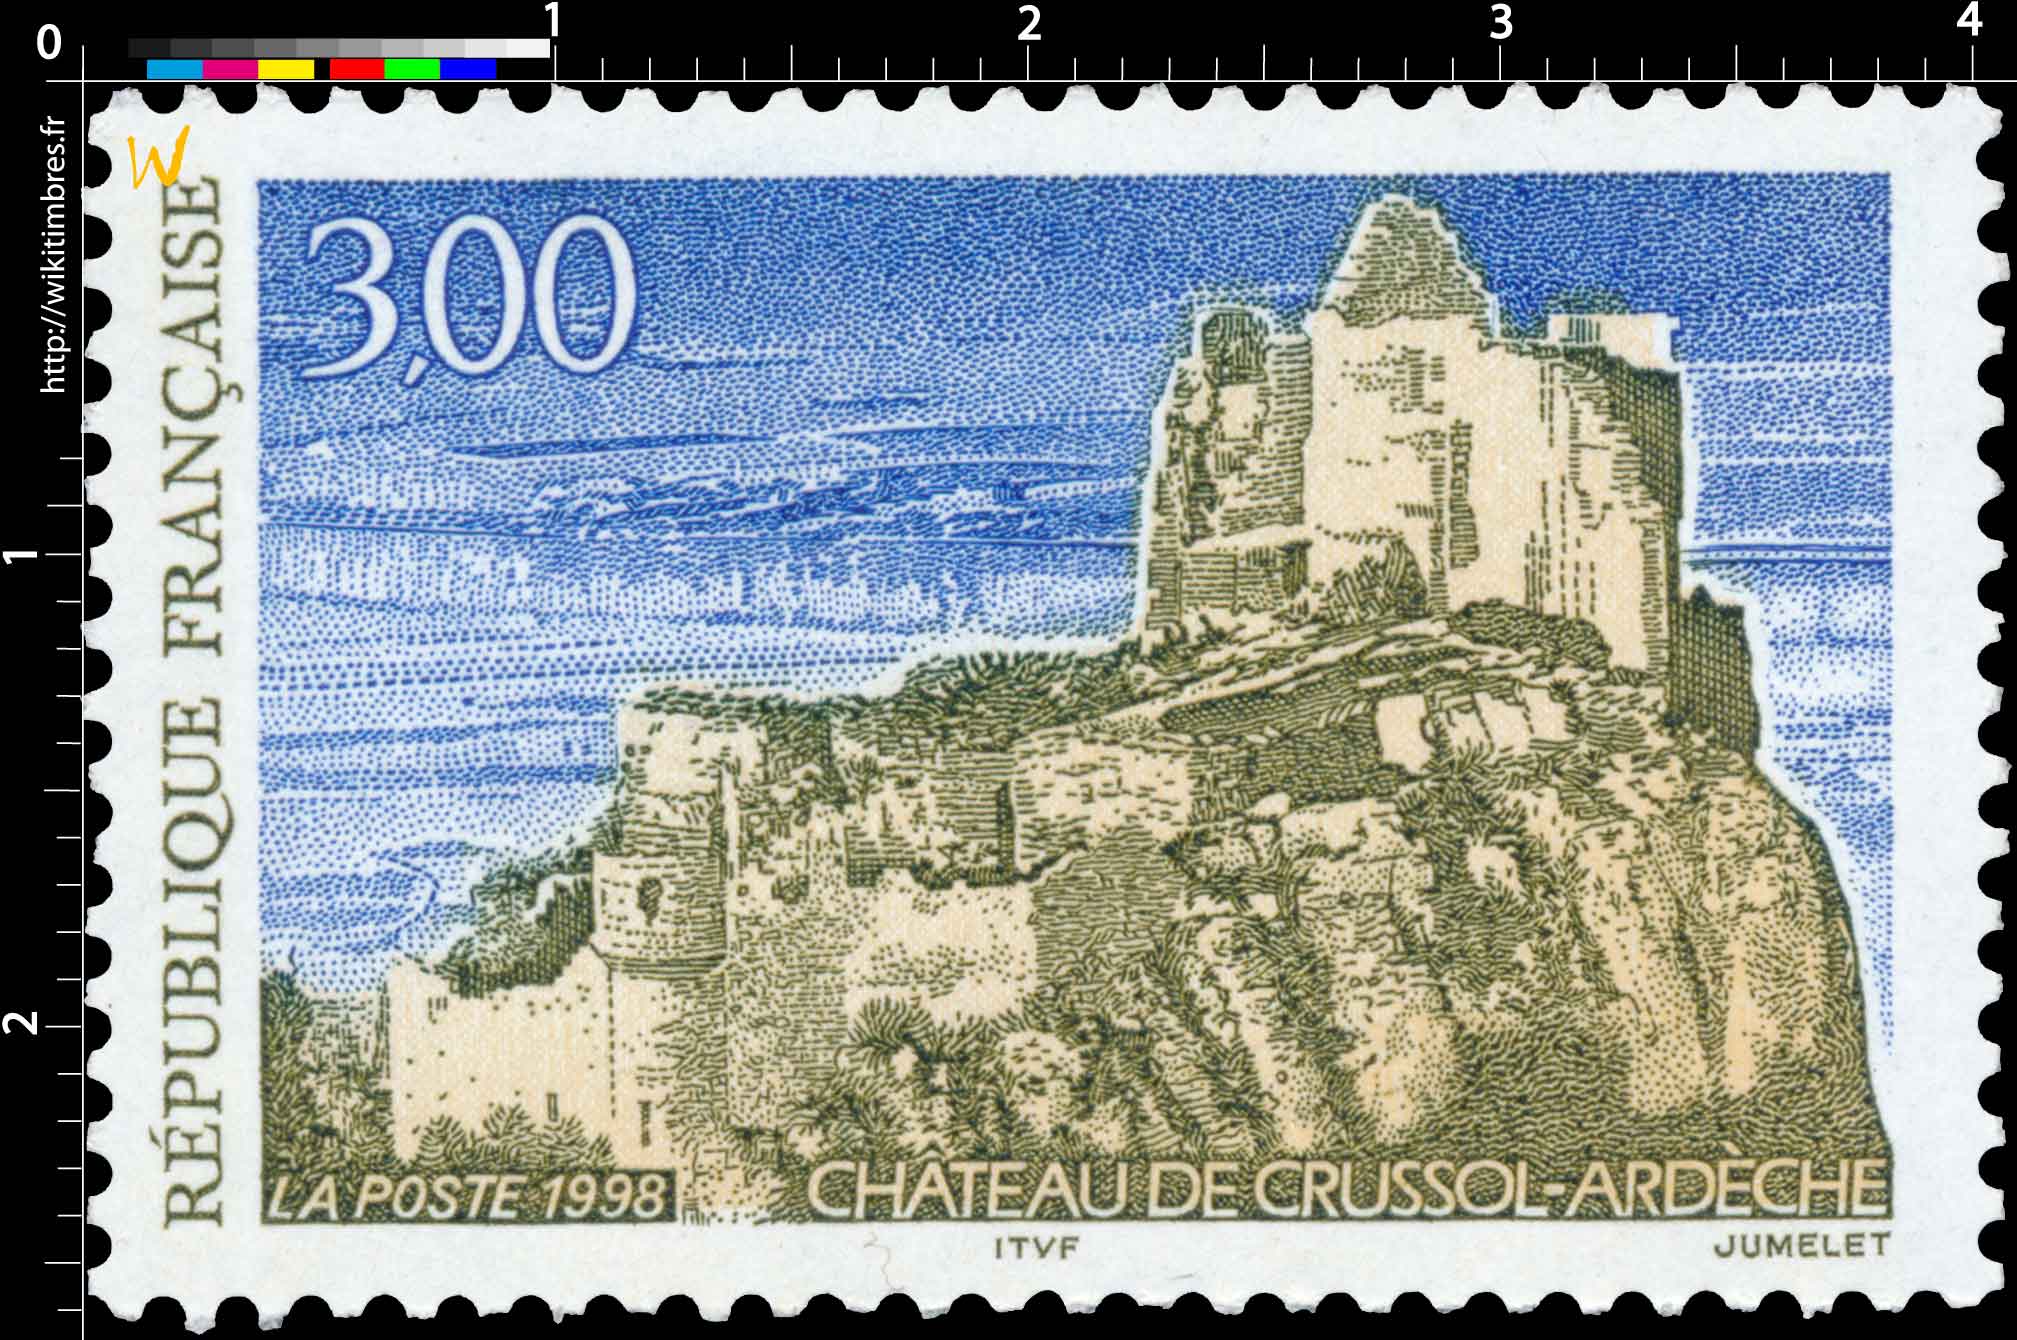 1998 CHÂTEAU DE CRUSSOL - ARDÈCHE